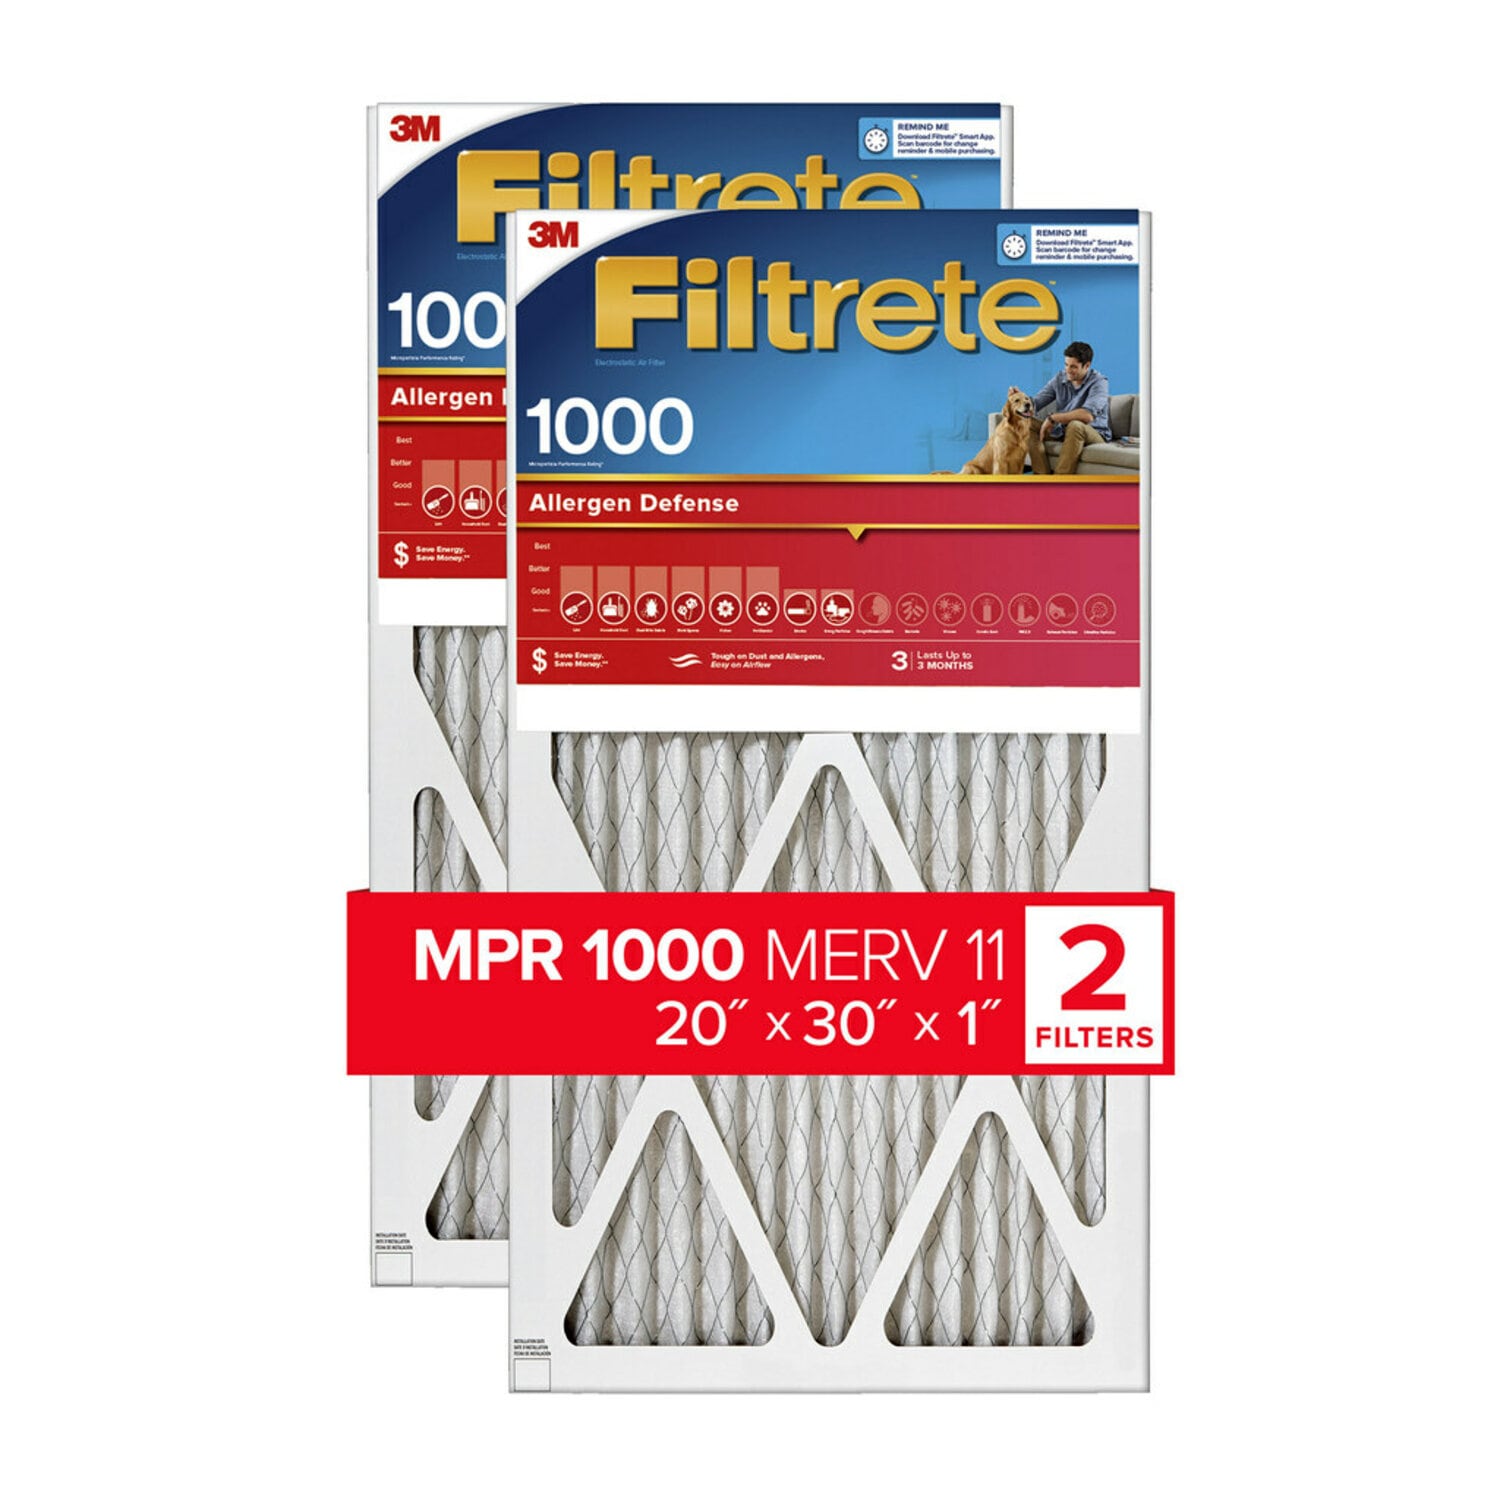 7100188736 - Filtrete Allergen Defense Air Filter, 1000 MPR, 9822-2PK-HDW, 20 in x
30 in x 1 in (50,8 cm x 76,2 cm x 2,5 cm)